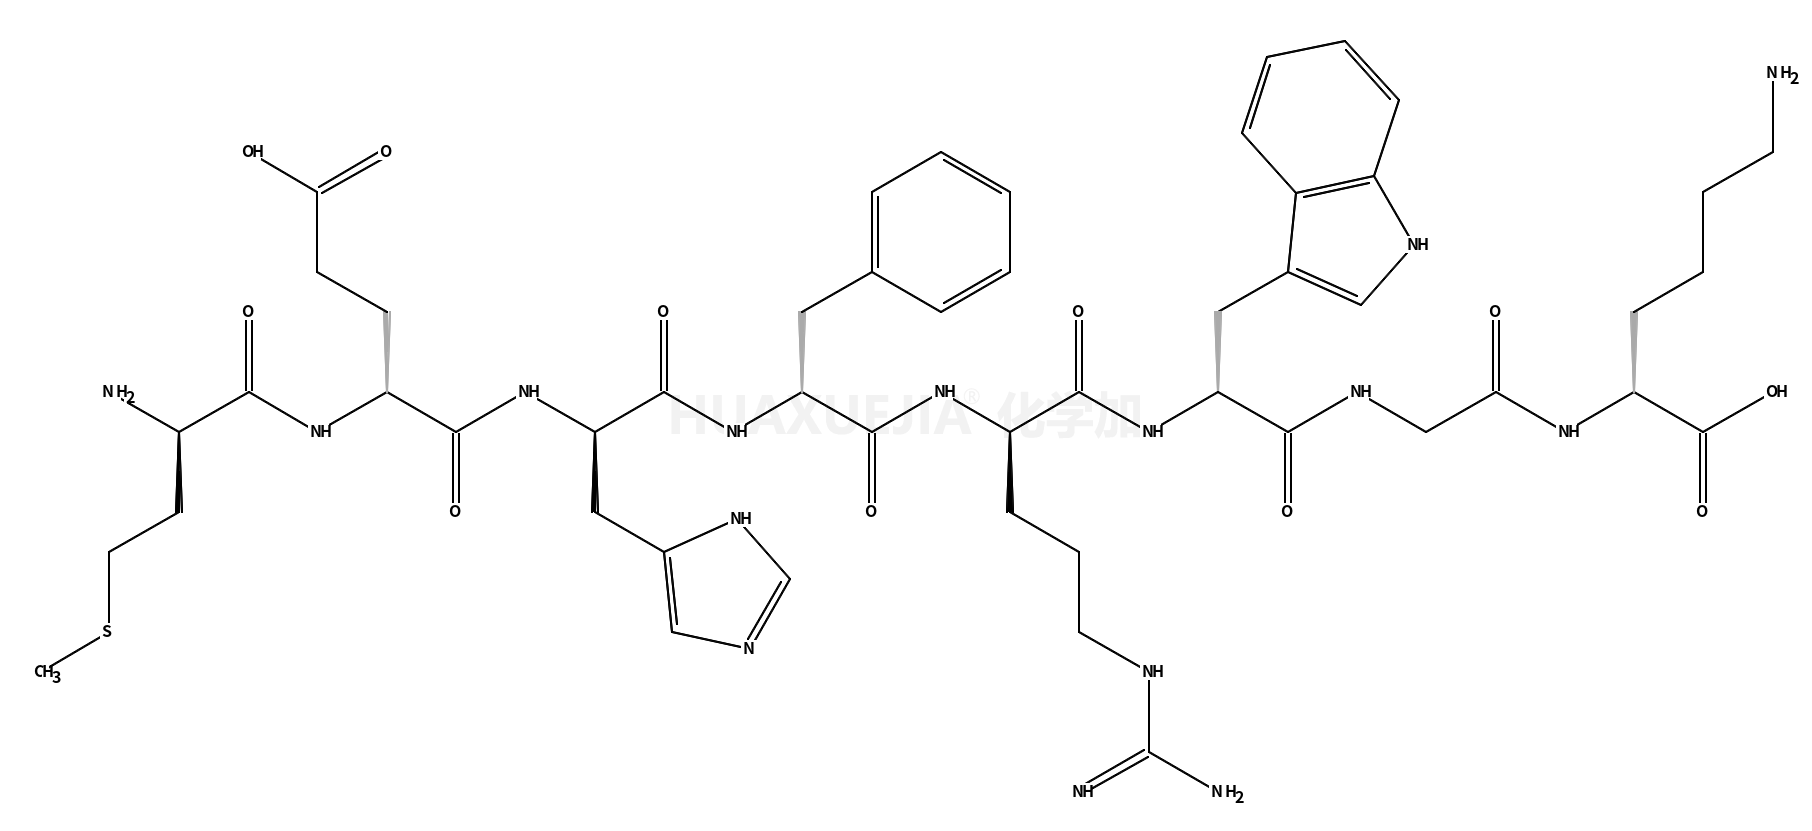 蛋氨酰-谷氨酰-组氨酰-苯丙氨酰-精氨酰-色氨酰-甘氨酰-赖氨酸